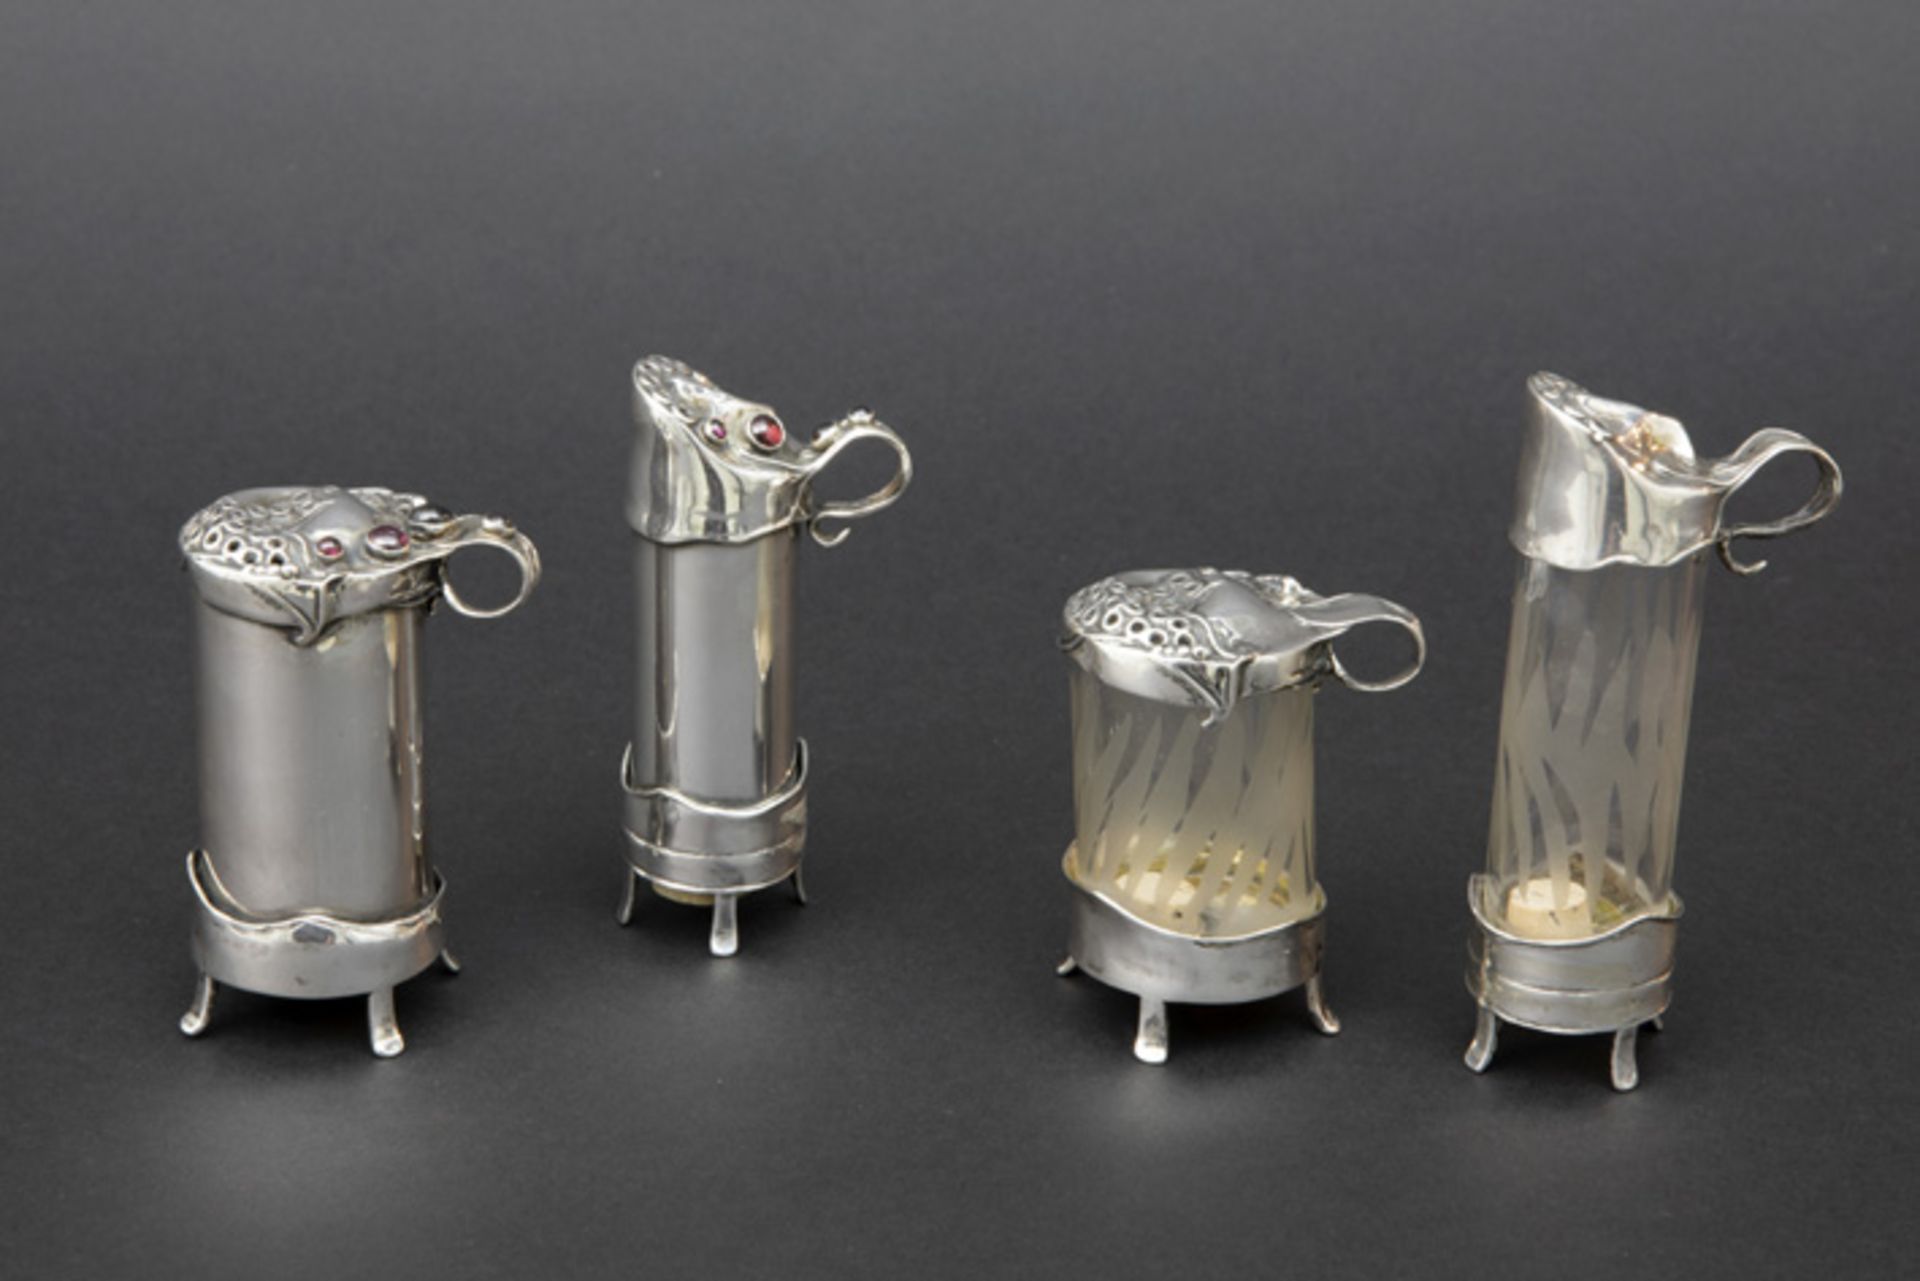 AMIR PORAN (20°/21° EEUW) (Israël) lot van vier gedekselde potjes in glas en zilver met typische Art